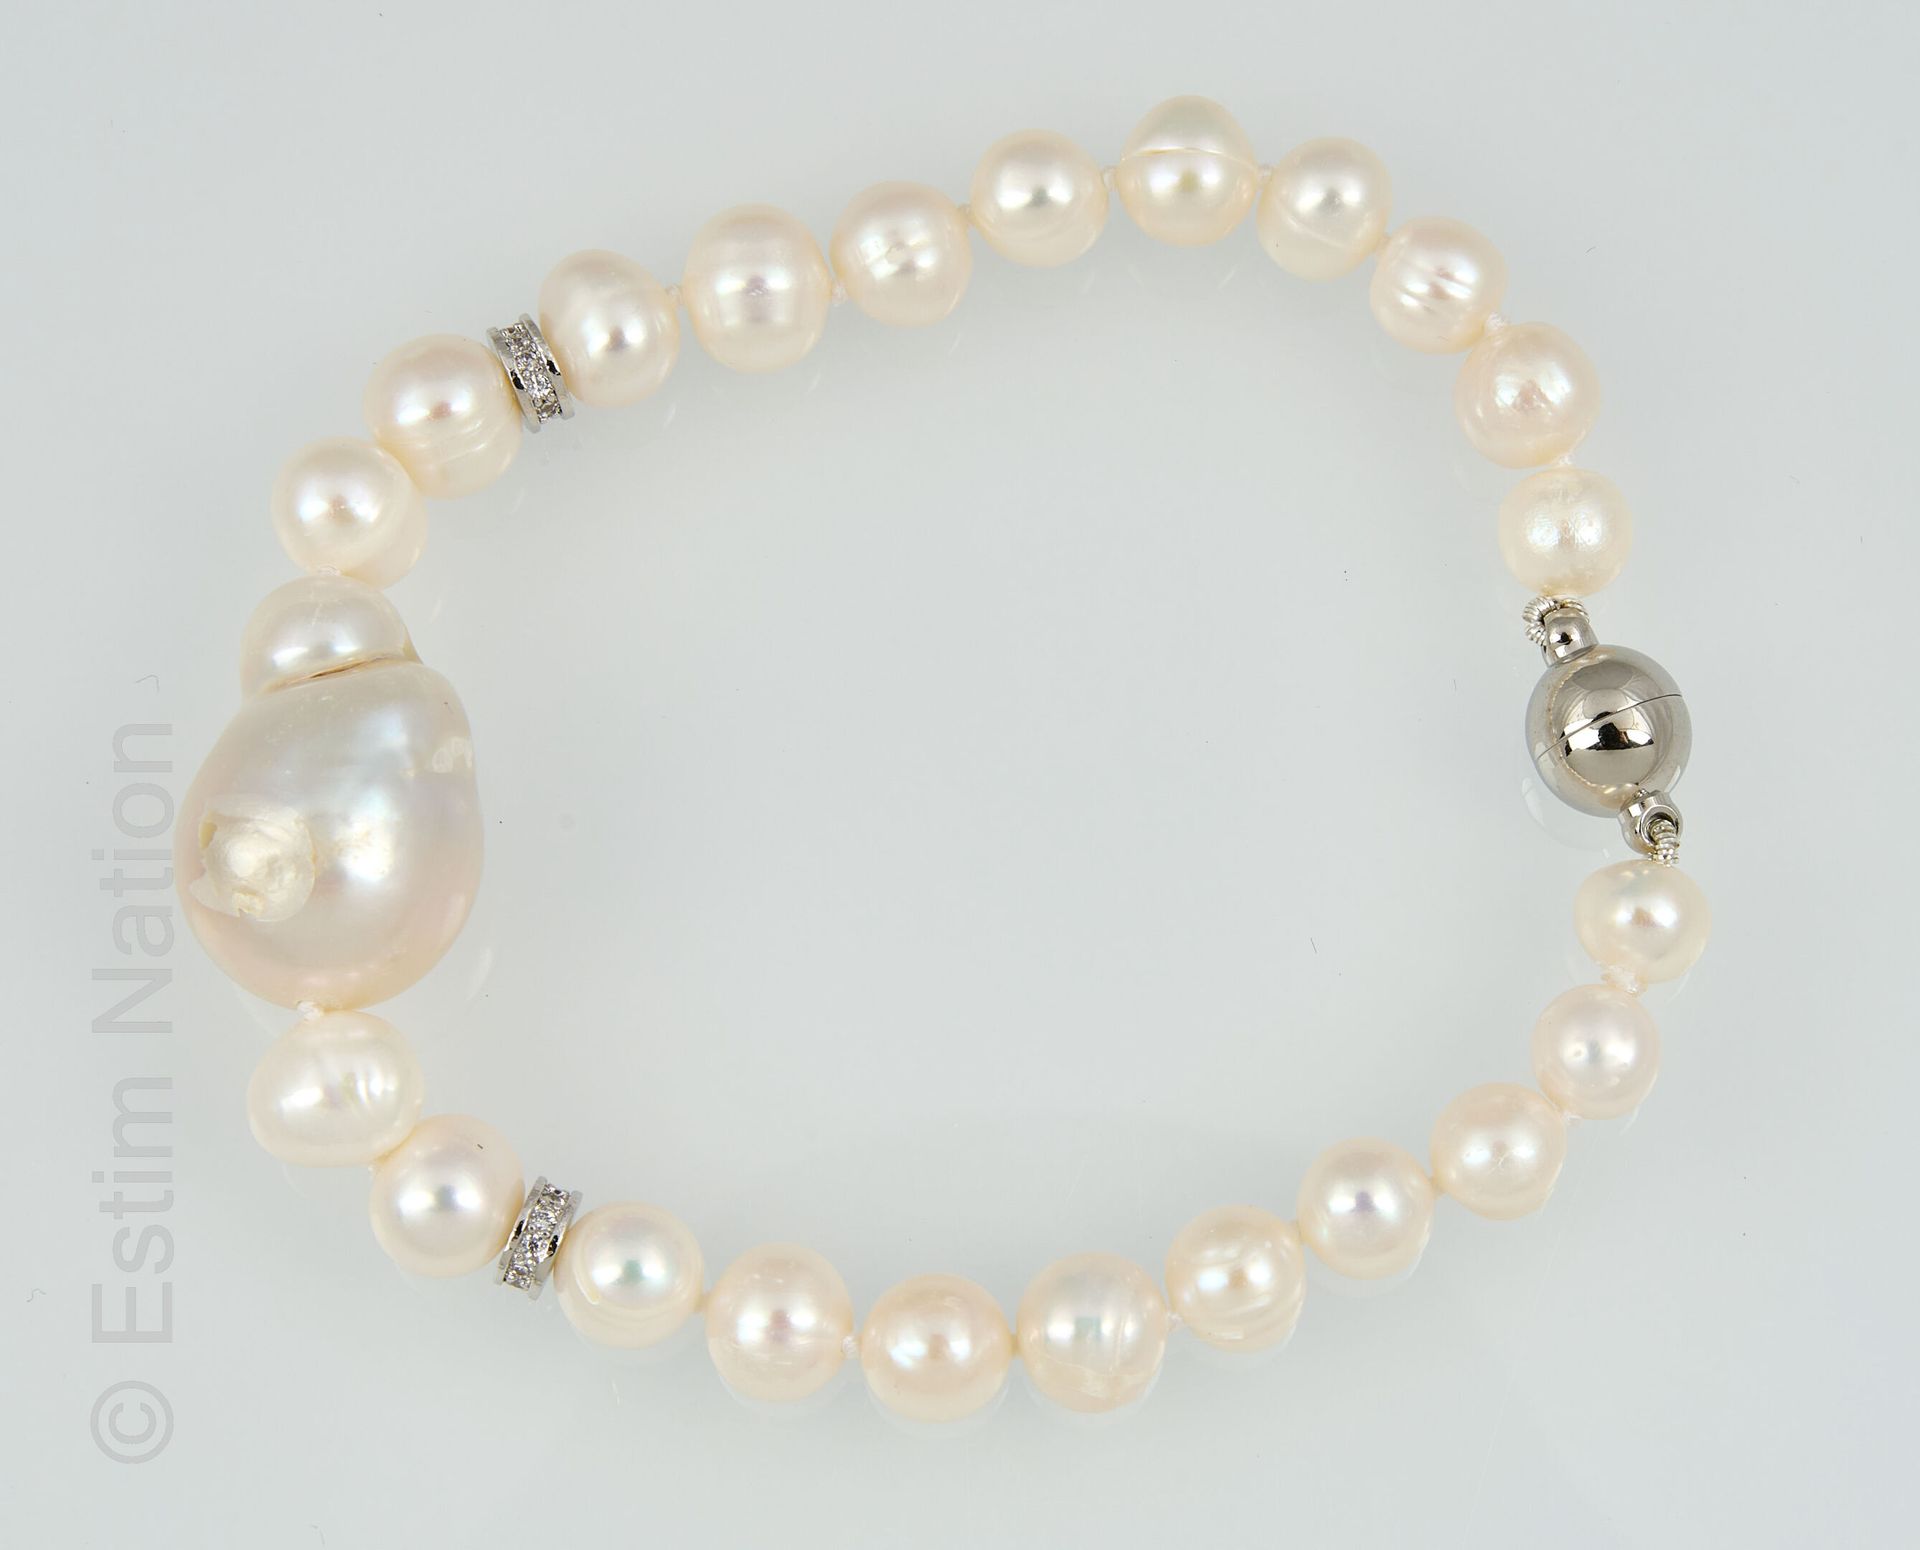 BRACELET PERLES 由淡水珍珠制成的手链，有一颗较大的珍珠，并有两个水钻环加强。磁力球扣。 
长度：18.5厘米